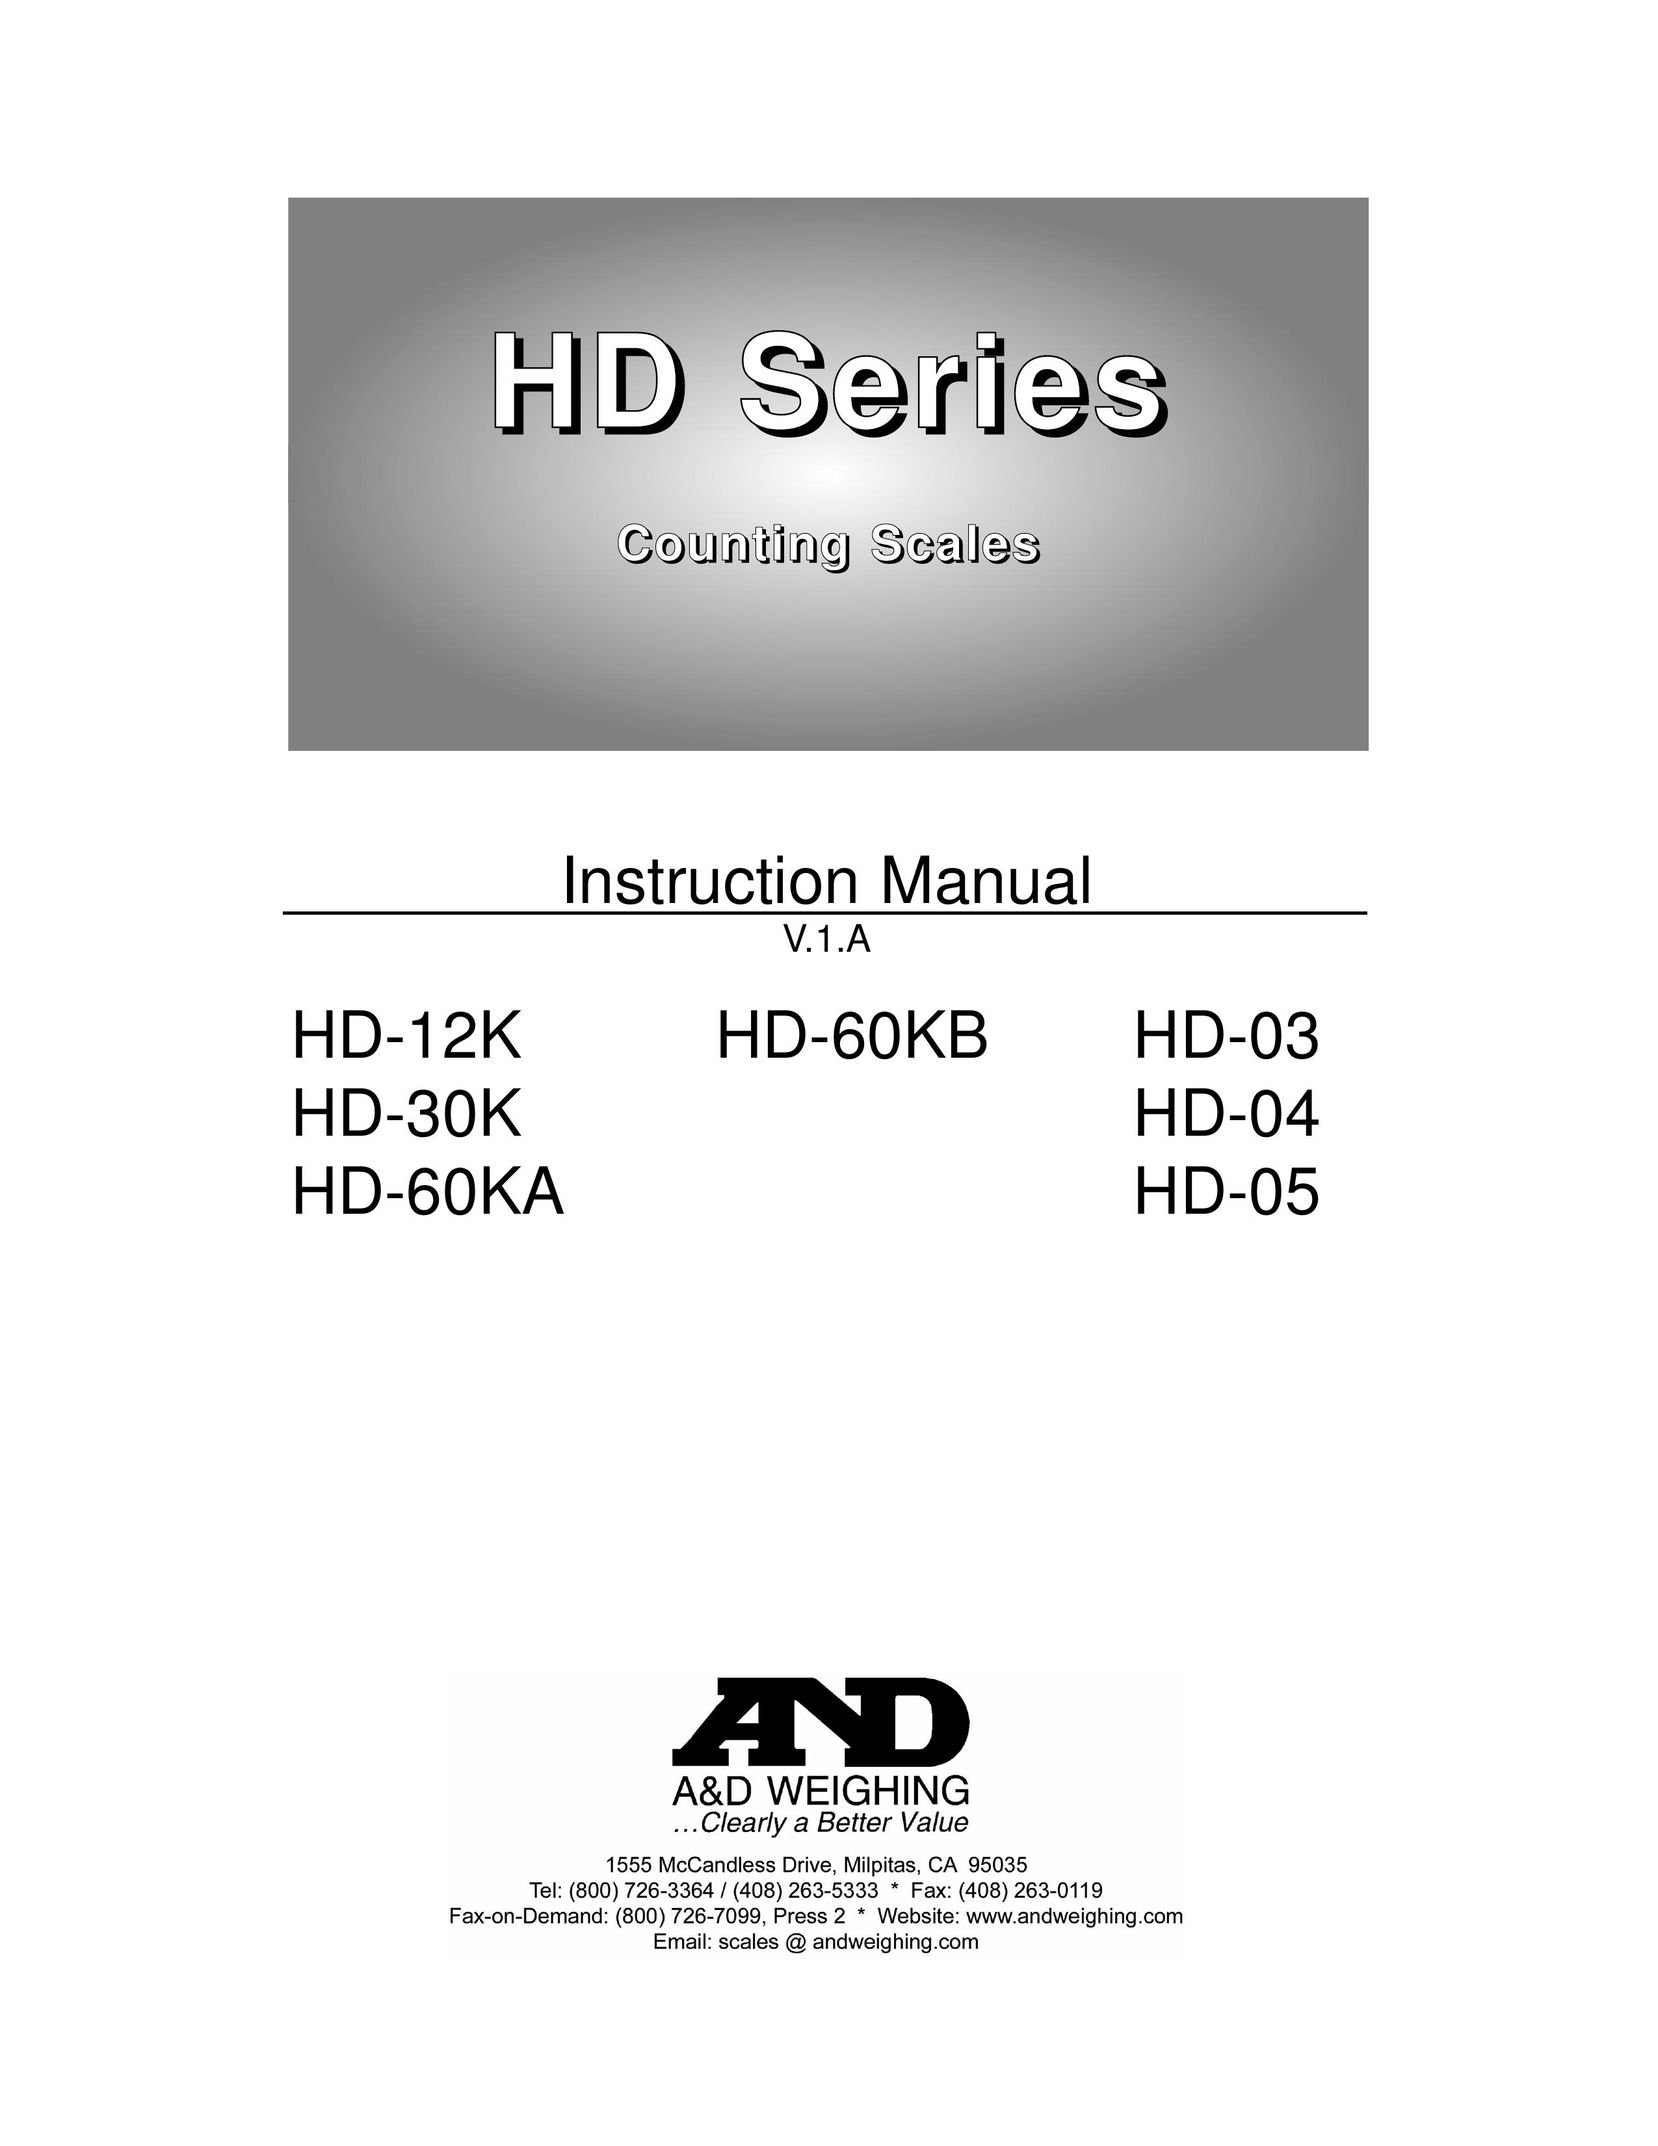 A&D HD-05 Building Set User Manual